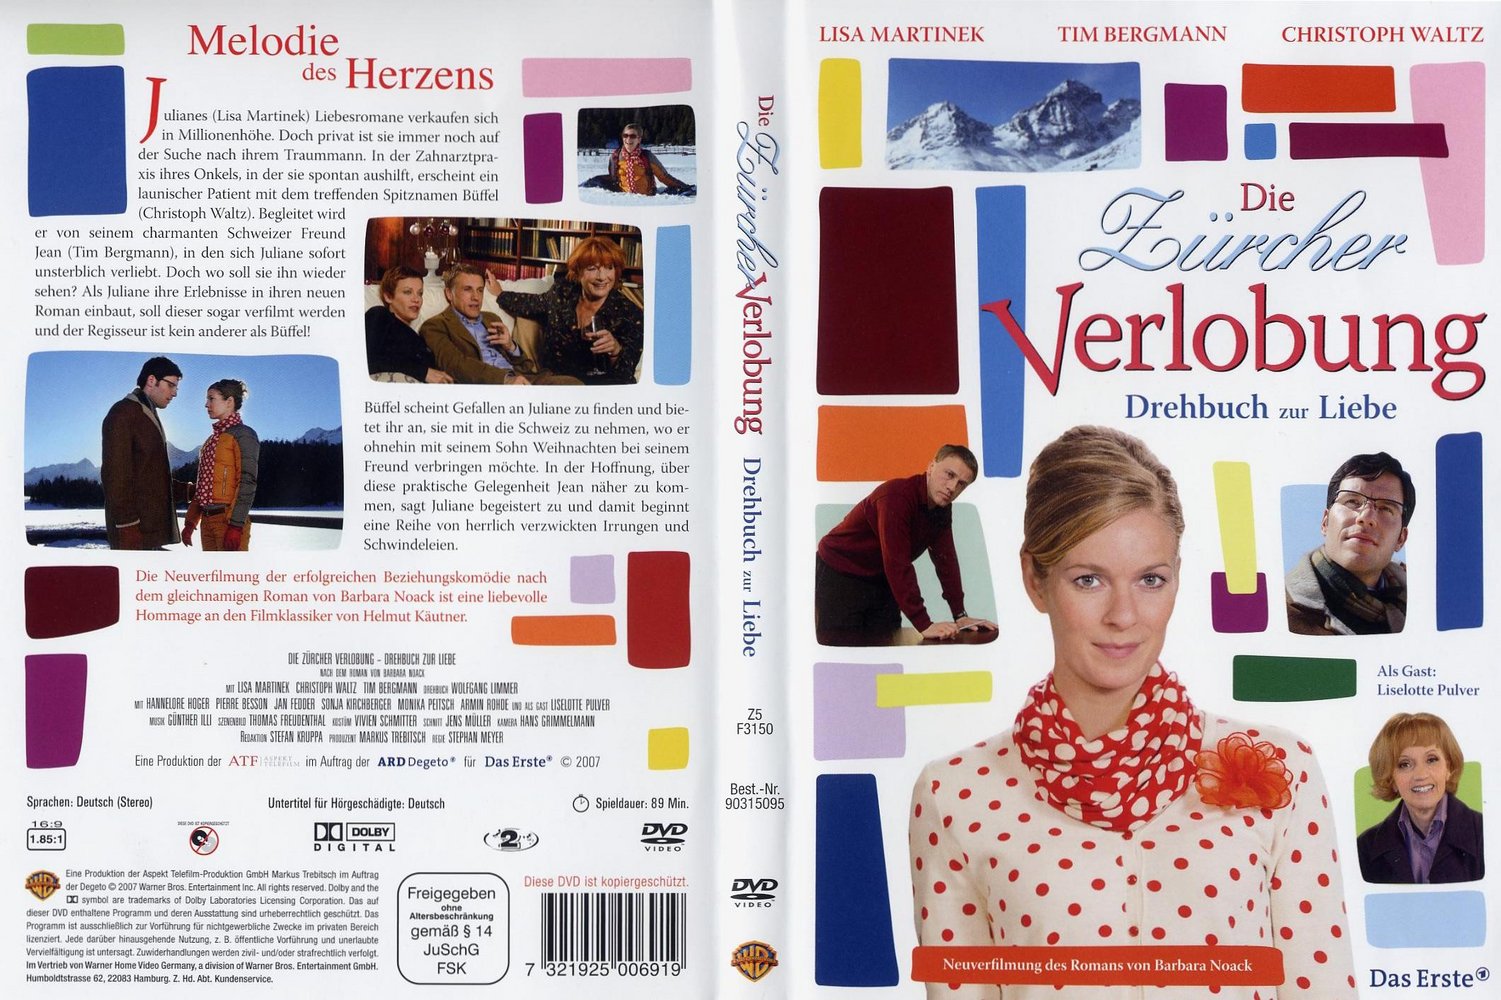 Die Zürcher Verlobung - Drehbuch zur Liebe (2007)